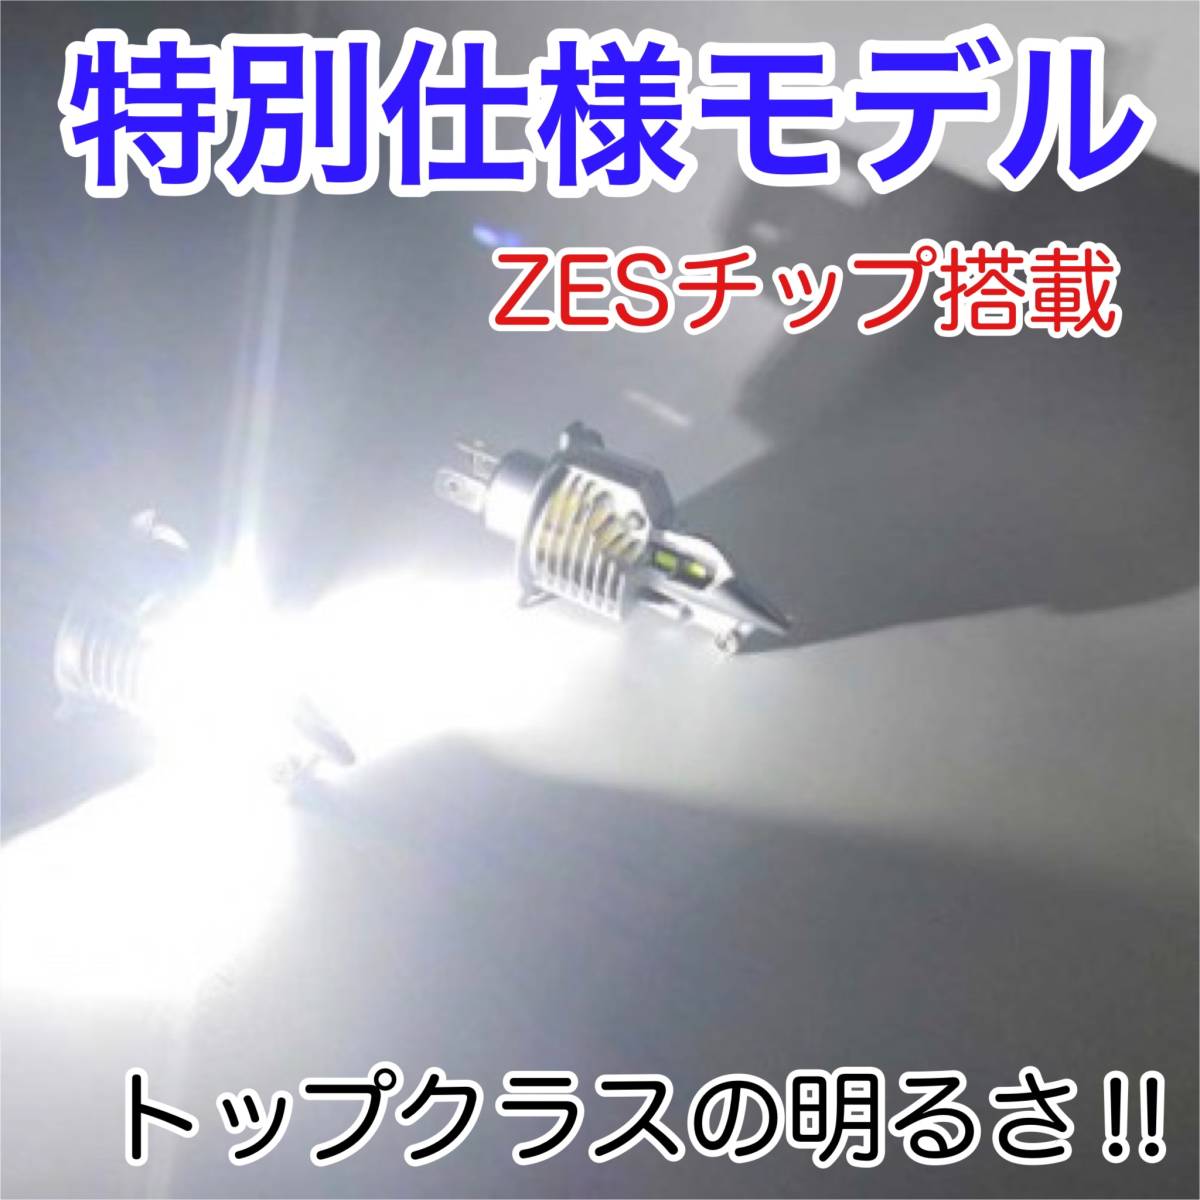 SUZUKI スズキ イナズマ GK7BA LEDヘッドライト H4 Hi/Lo バルブ バイク用 1灯 S25 テールランプ2個 ホワイト 交換用